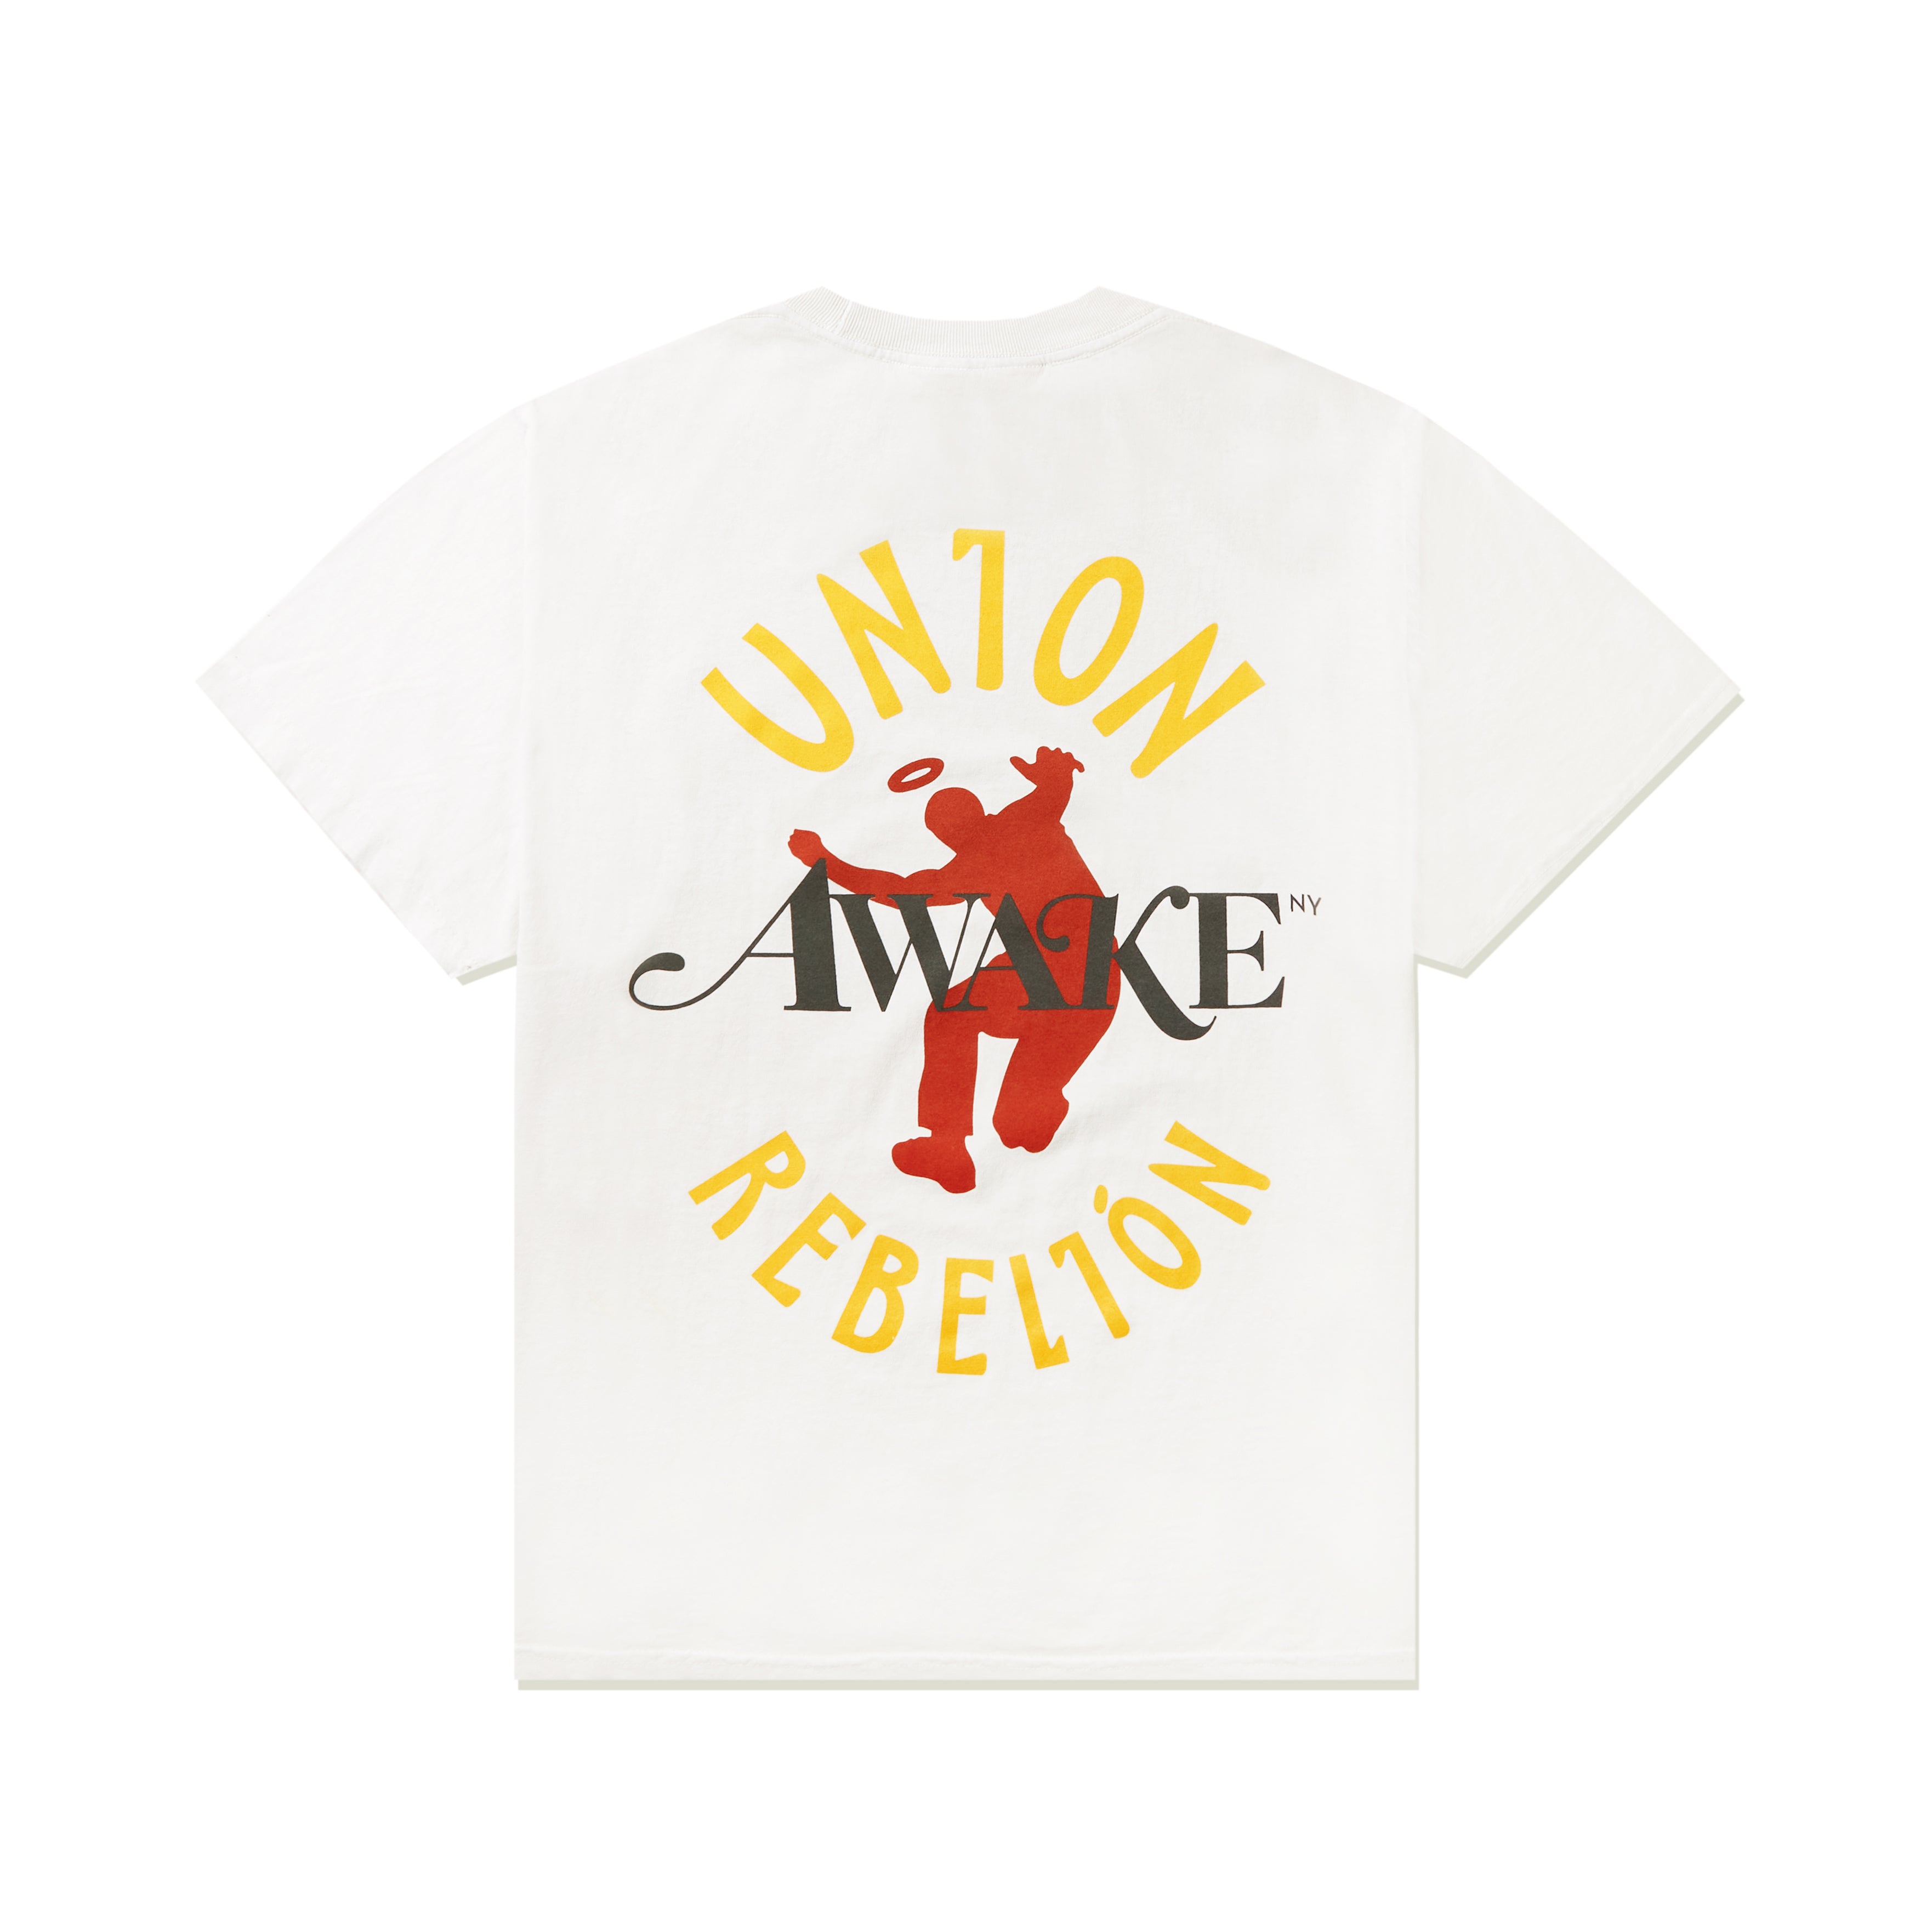 Awake NY x Union LA Rebelión Tee